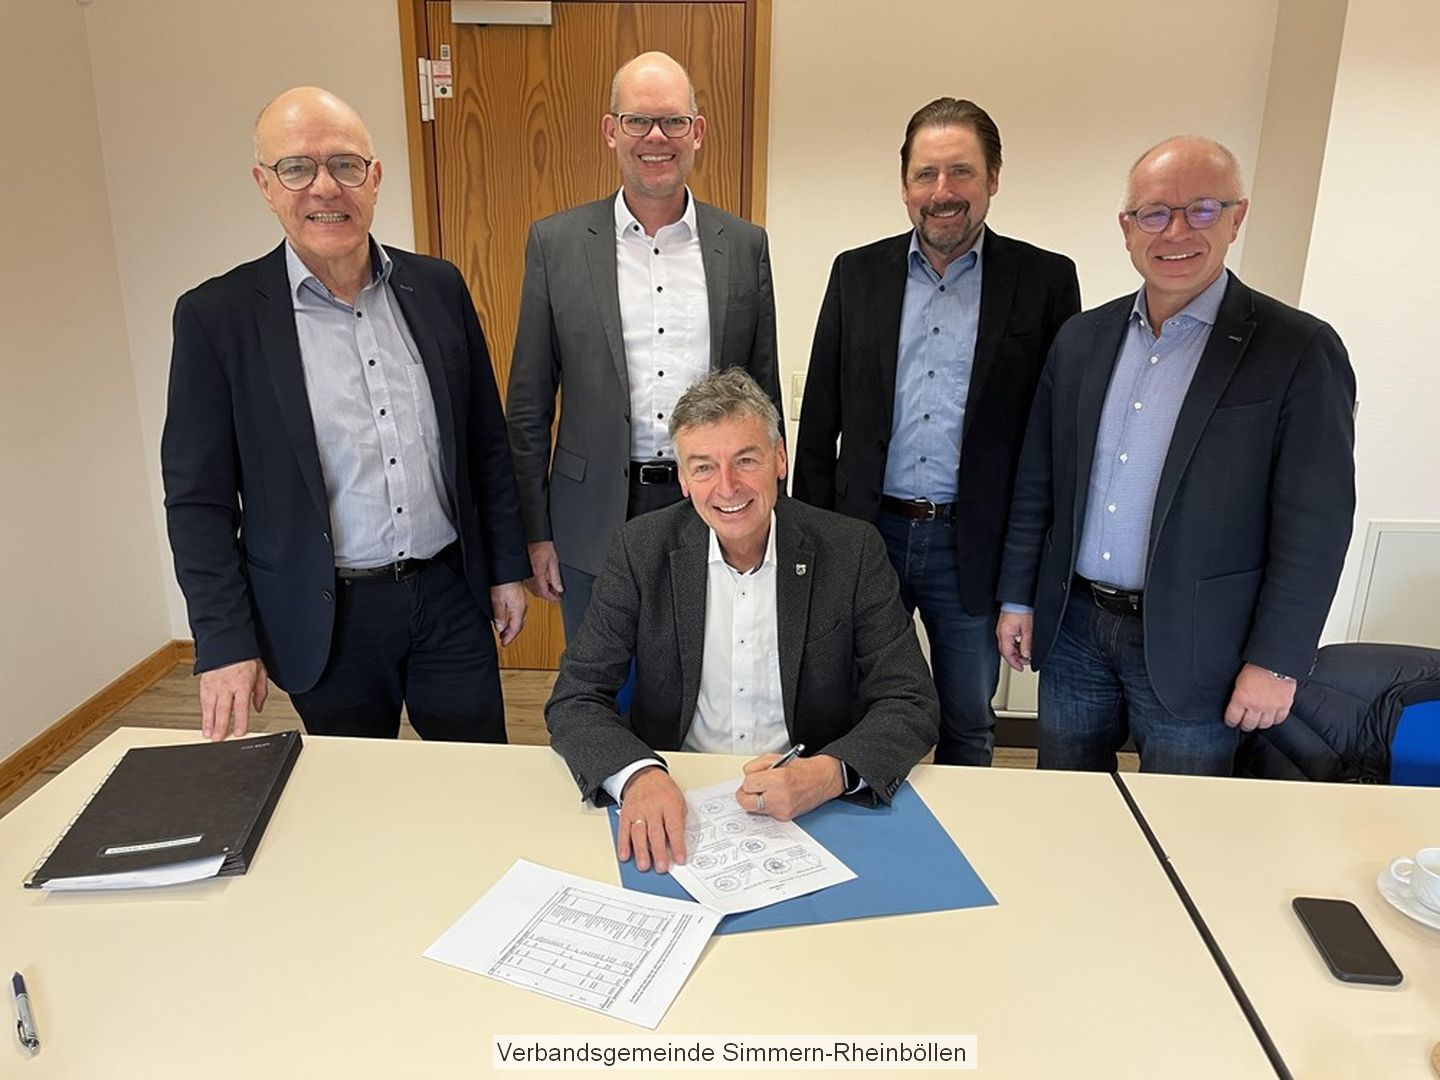 Unterzeichnung der Beitrittsatzung zur Gründung der KK RHK AöR durch die Bürgermeister am 08.12.2022